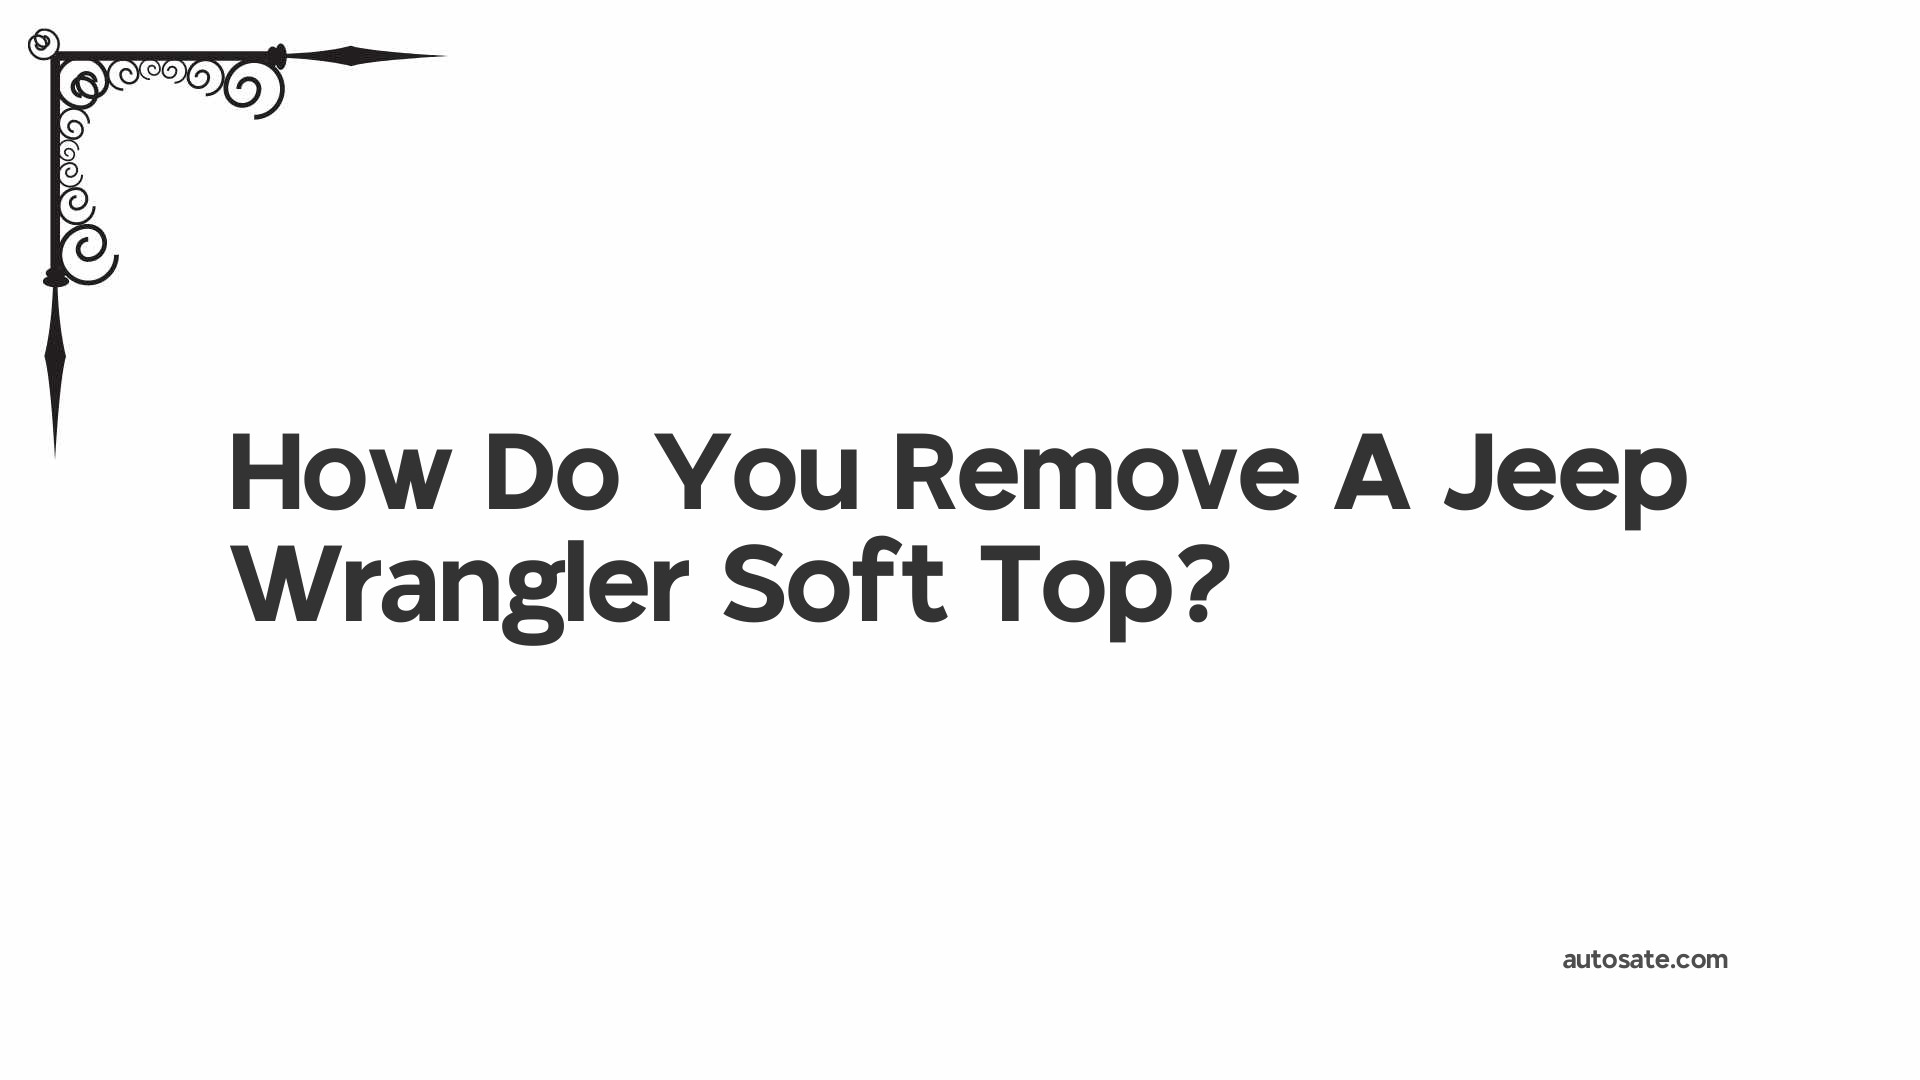 How Do You Remove A Jeep Wrangler Soft Top?